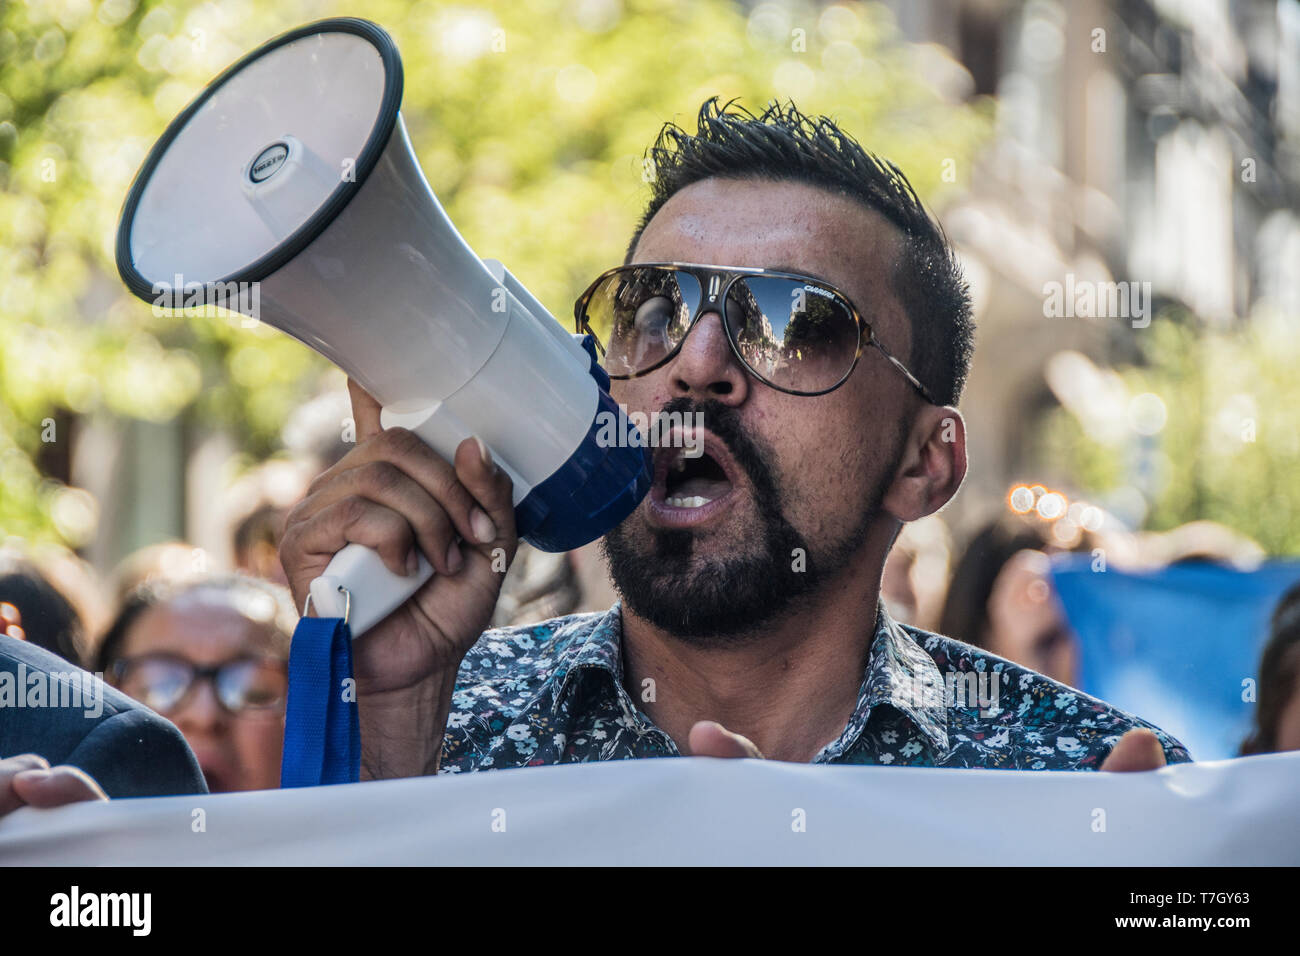 Comunità zingara marzo per protestare contro gli attacchi razzisti che stanno avendo luogo in paesi europei e anche luogo a Madrid. Foto Stock